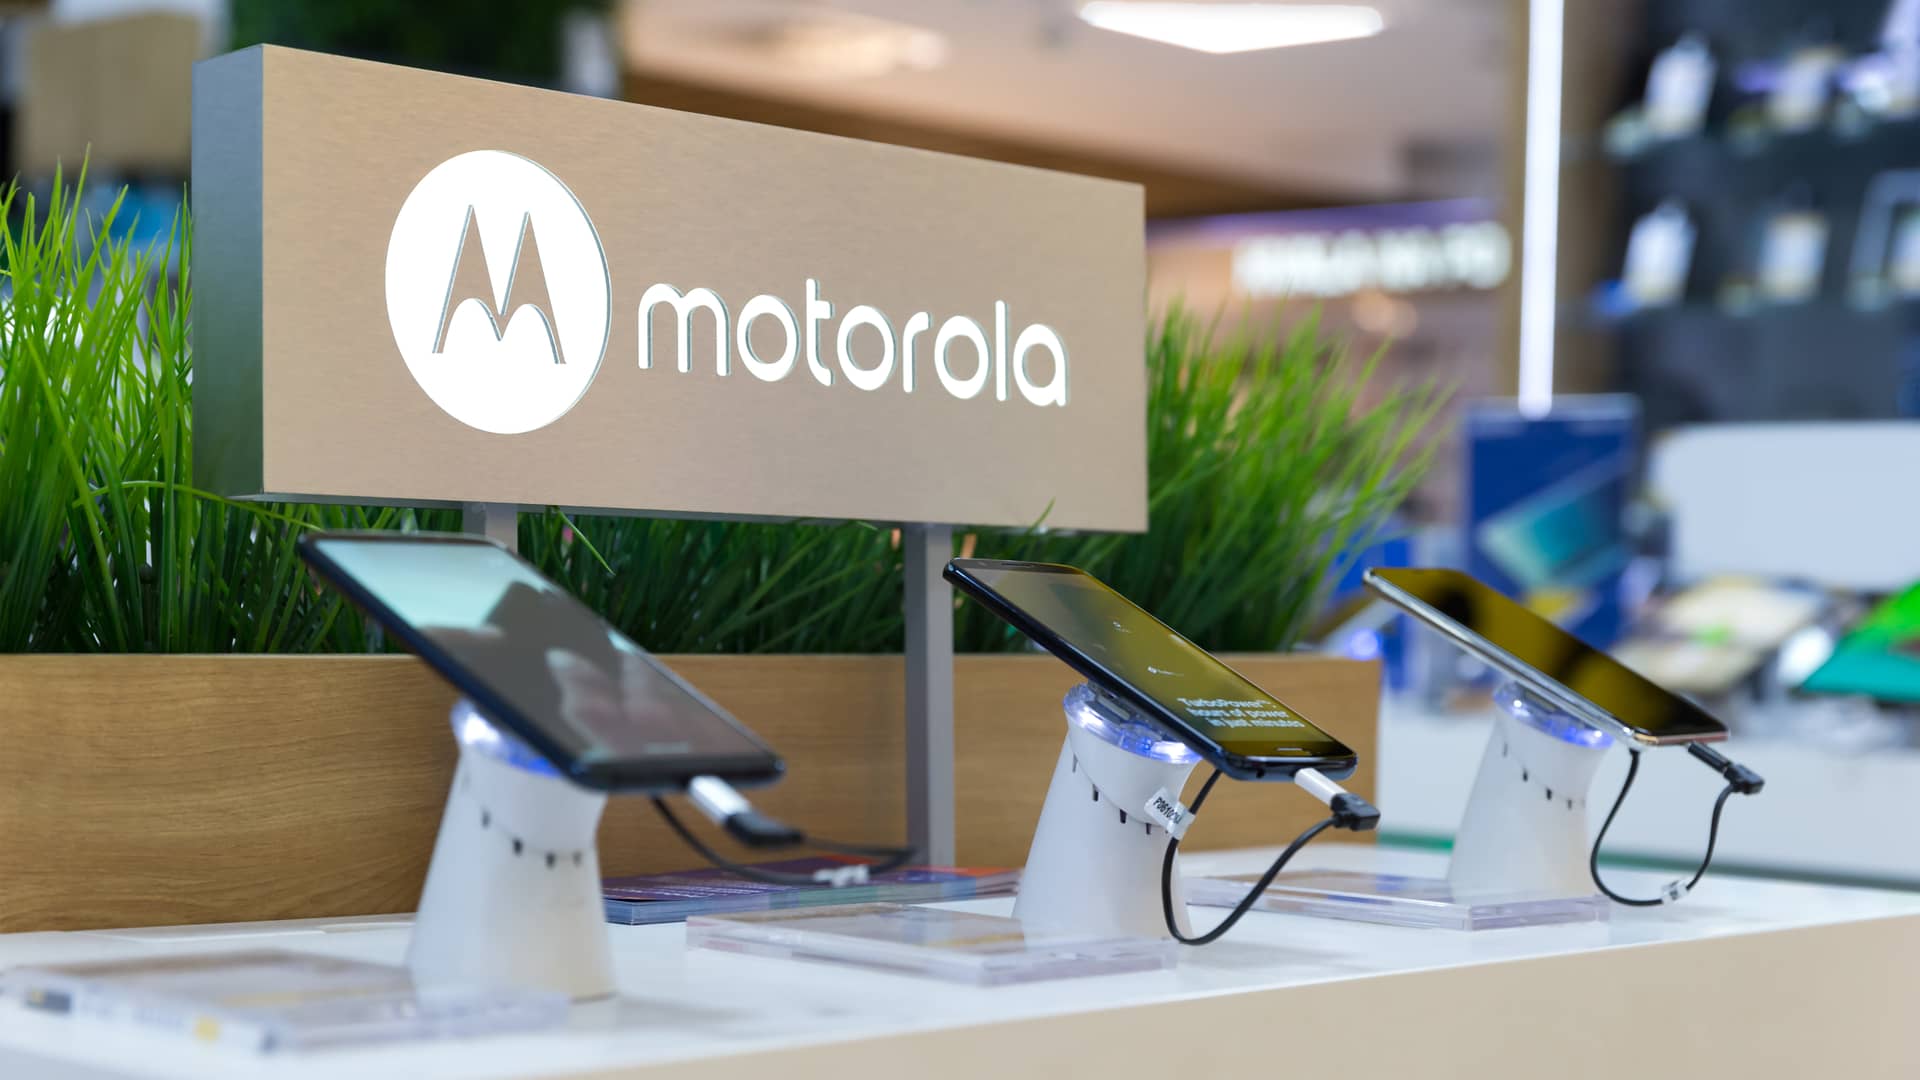 Celulares Motorola: Precios, modelos y planes | Febrero 2023